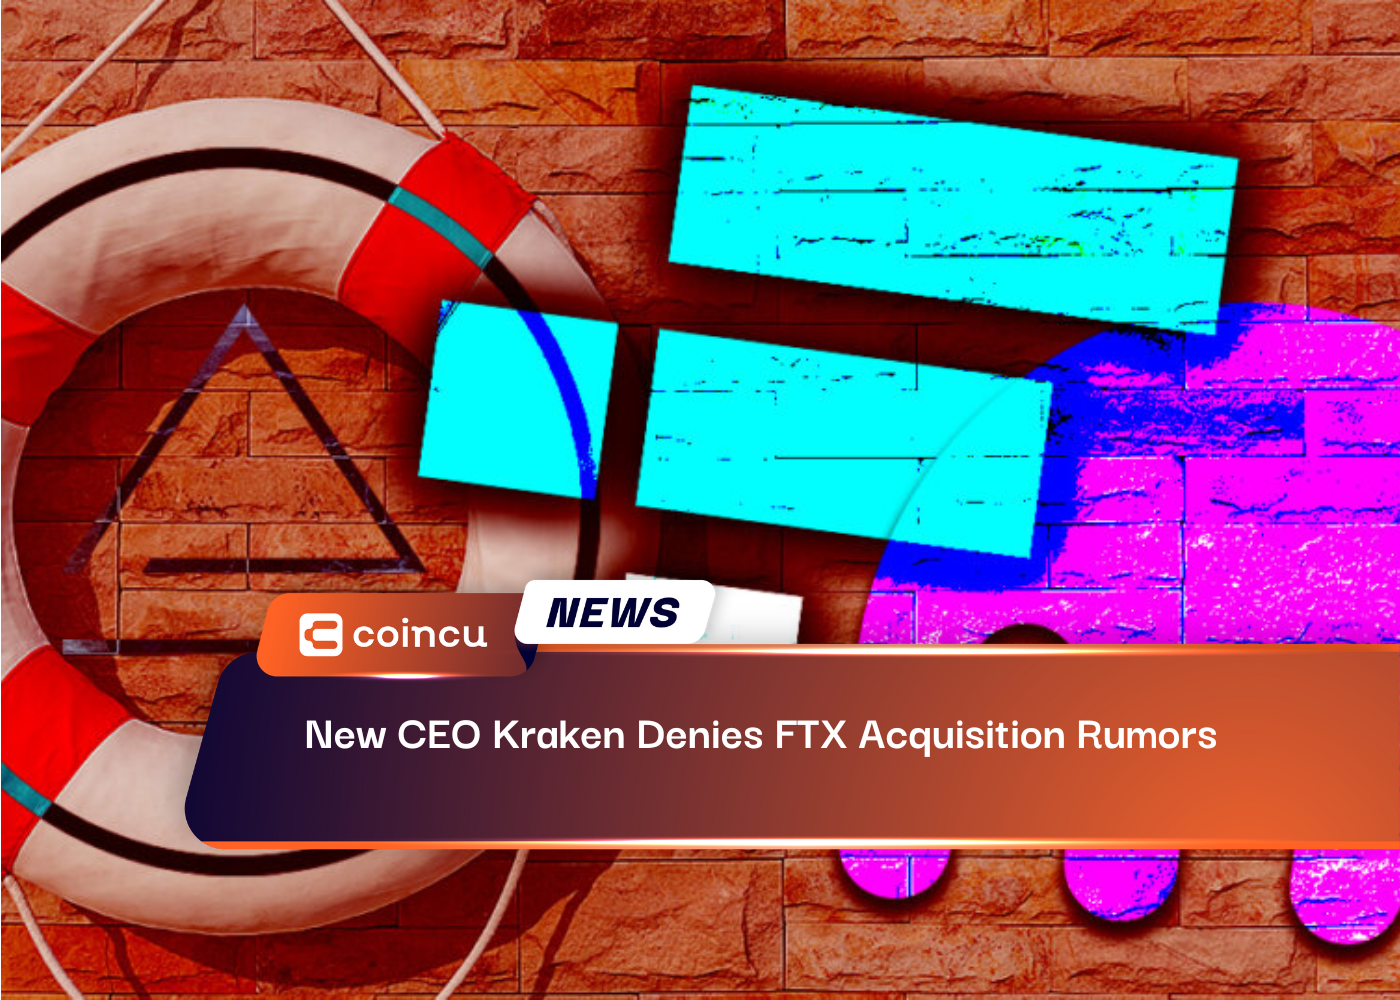 New CEO Kraken Denies FTX Acquisition Rumors